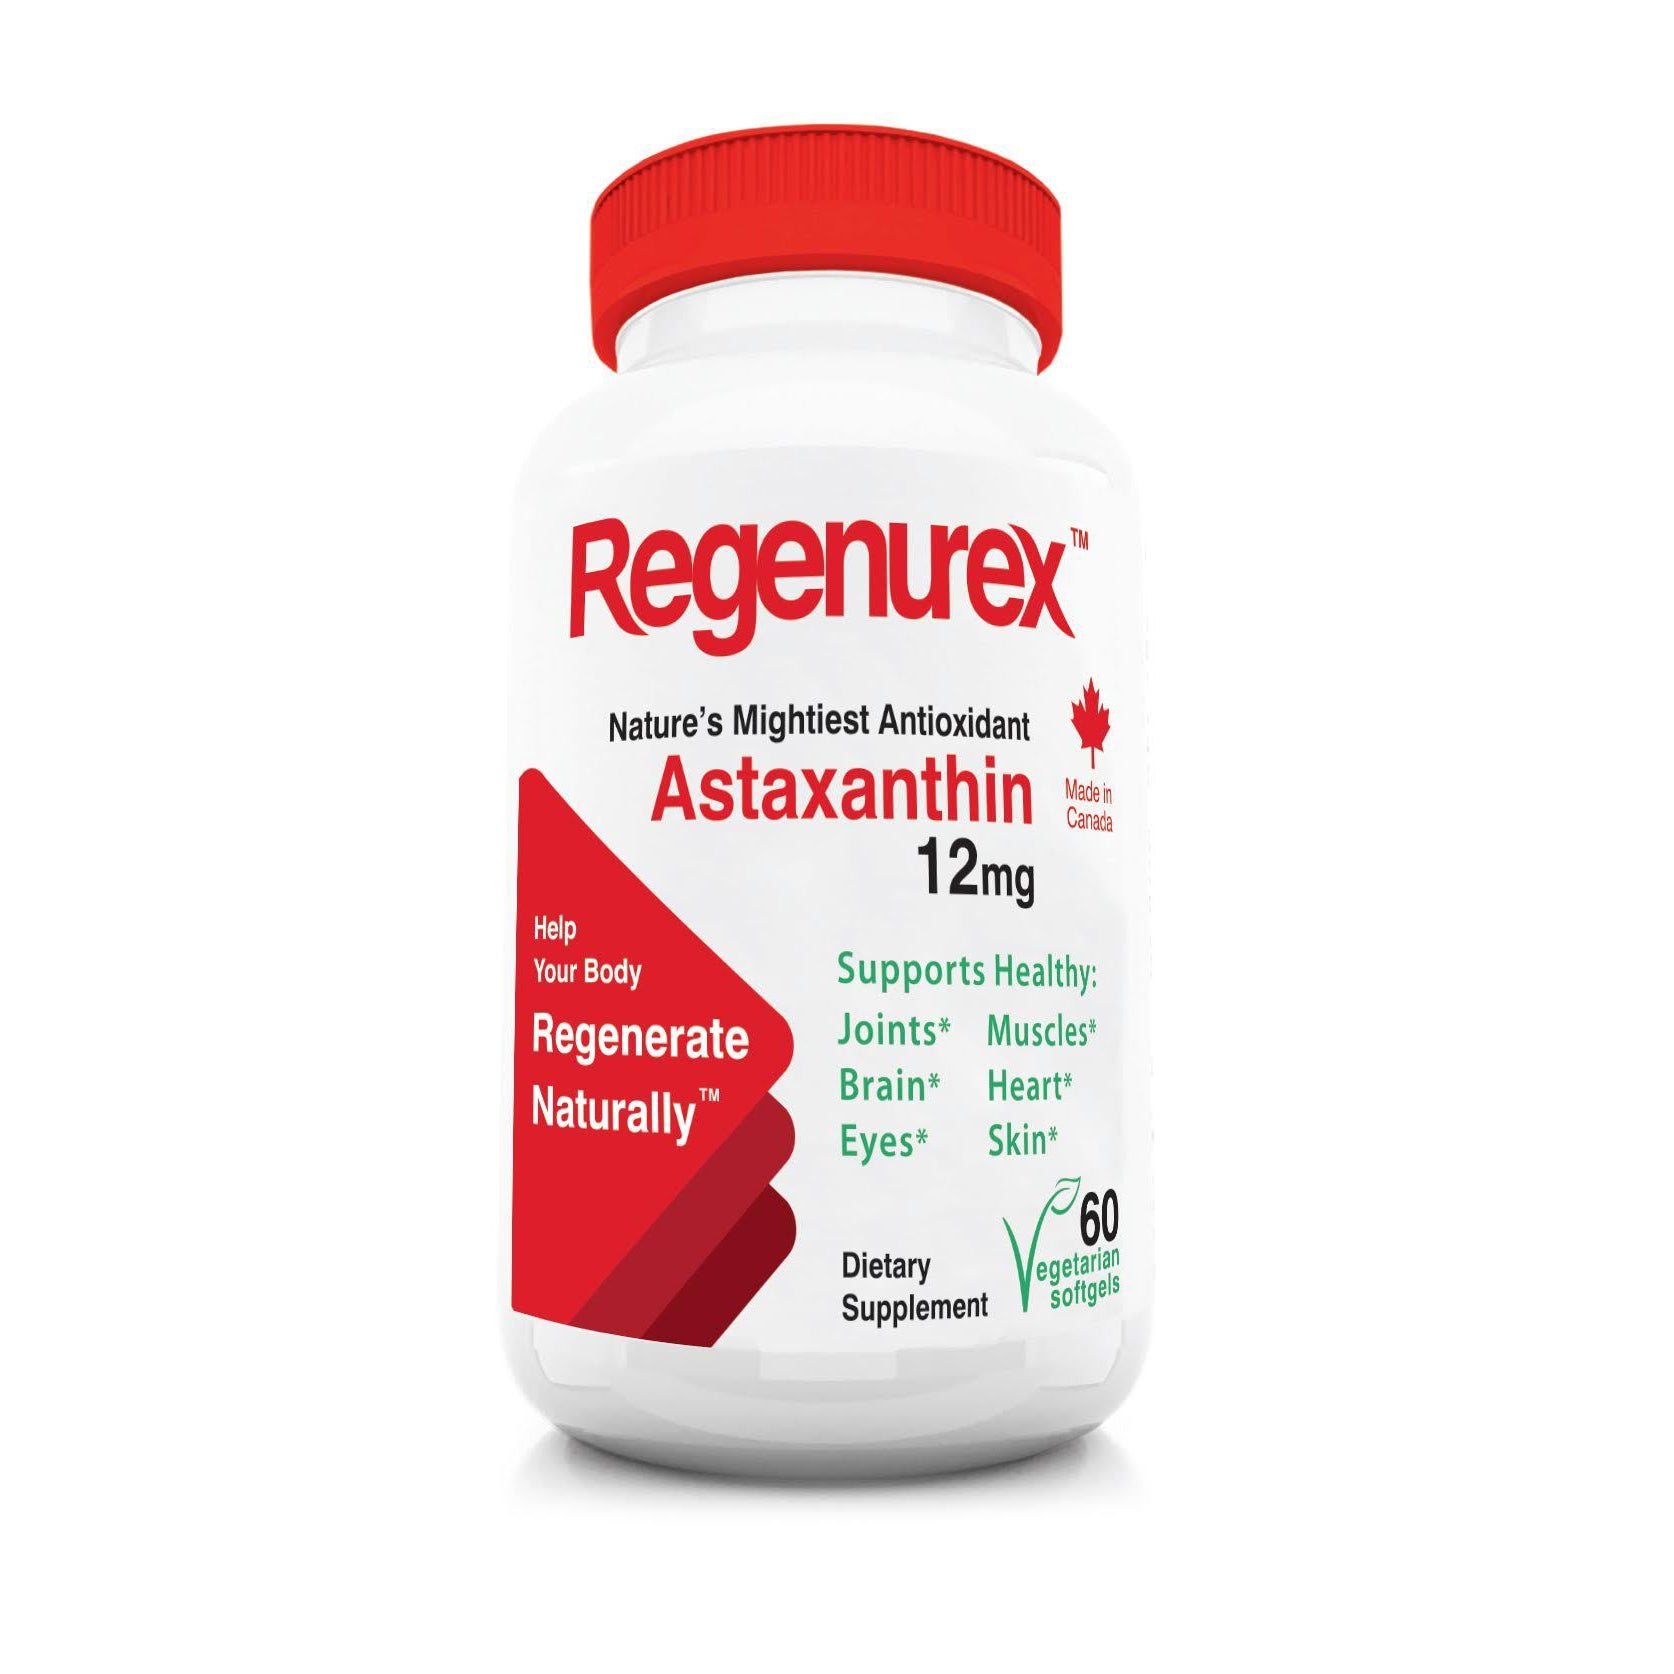 Astaxanthin<br>Regenurex